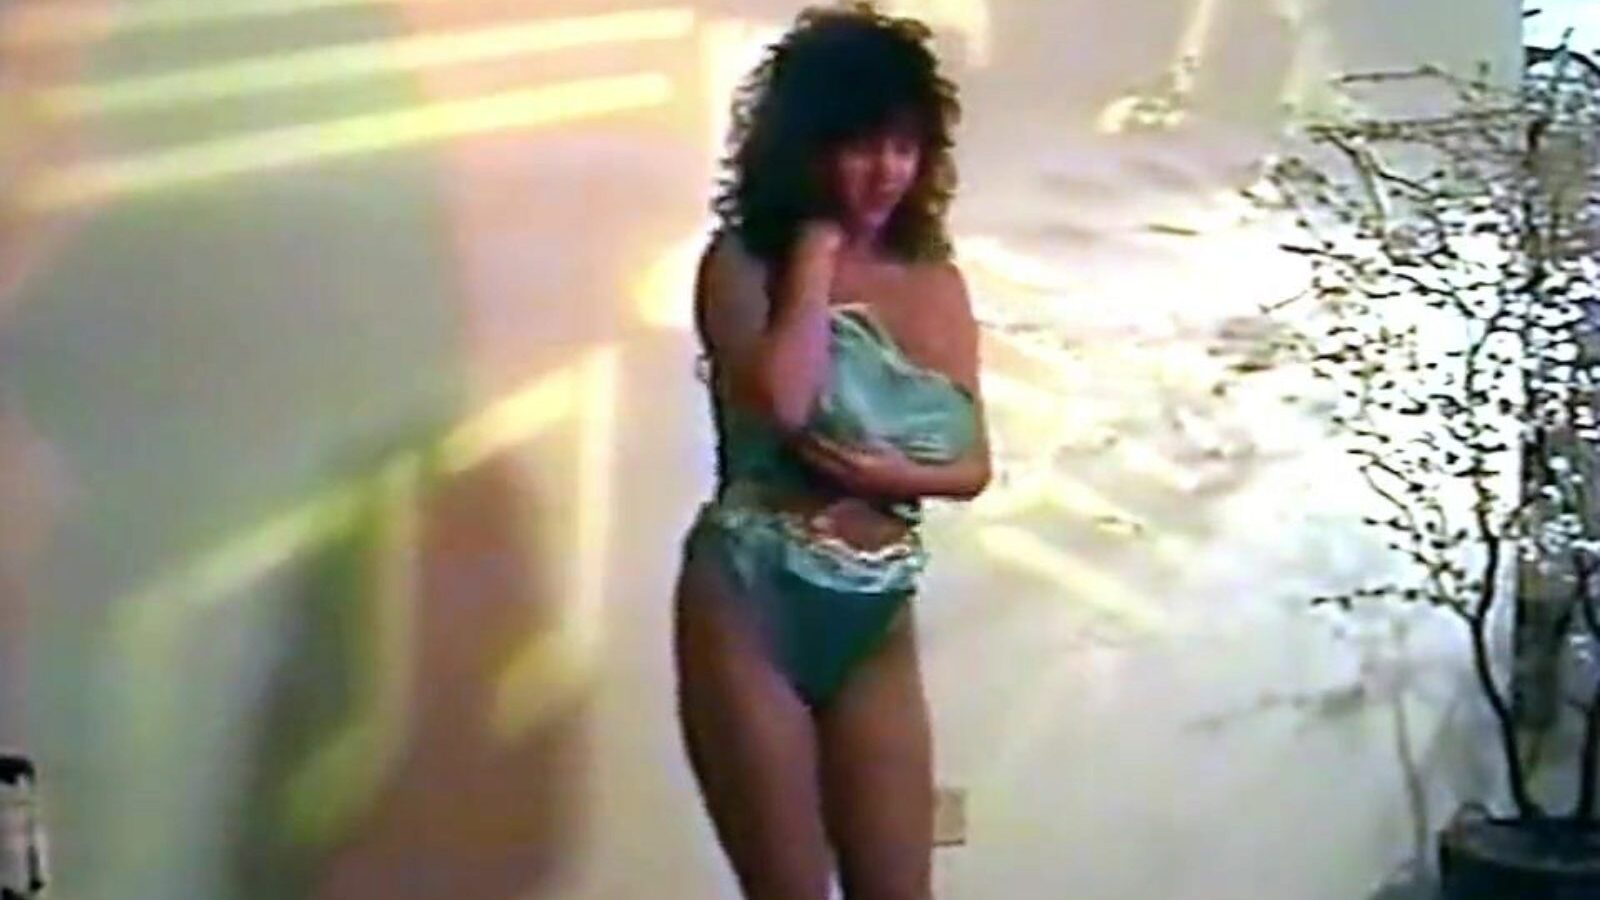 pakkomielle - vuosikerta 80-luvun alusvaatetanssi isolla katsella pakkomielle - vuosikerta 80-luvun alusvaatetanssi tanssia isot tissit -elokuvalla xhamsterilla - lopullinen tietokanta vapaasti kaikille brittiläisistä tissit isot hd-pornoputkileikkeet